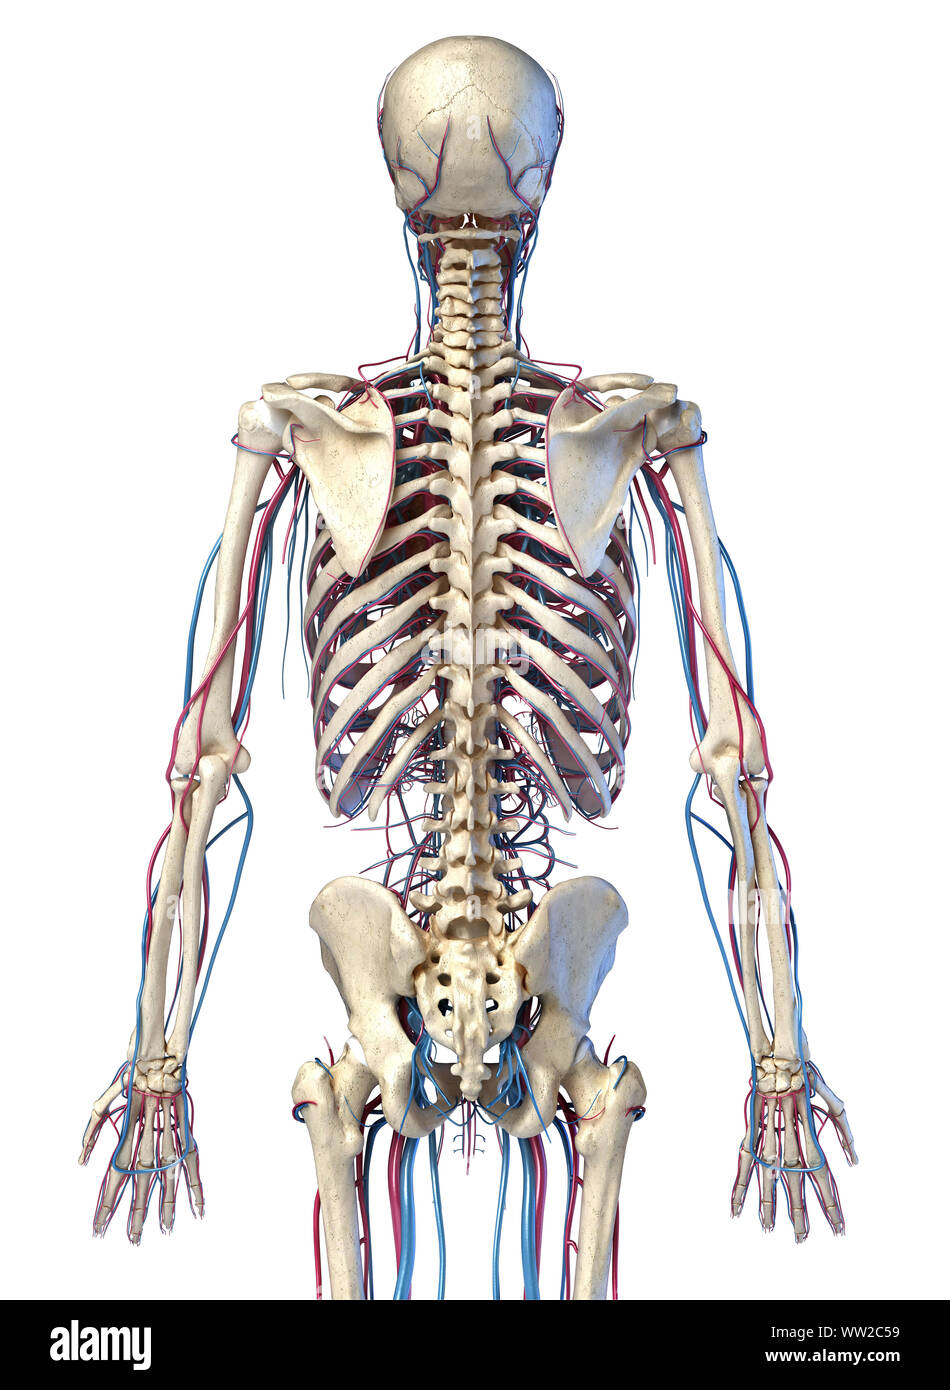 L'anatomie du corps humain. 3d illustration de squelettique 3/4 et cardiovasculaire. Vu de l'arrière. Sur fond blanc. Banque D'Images